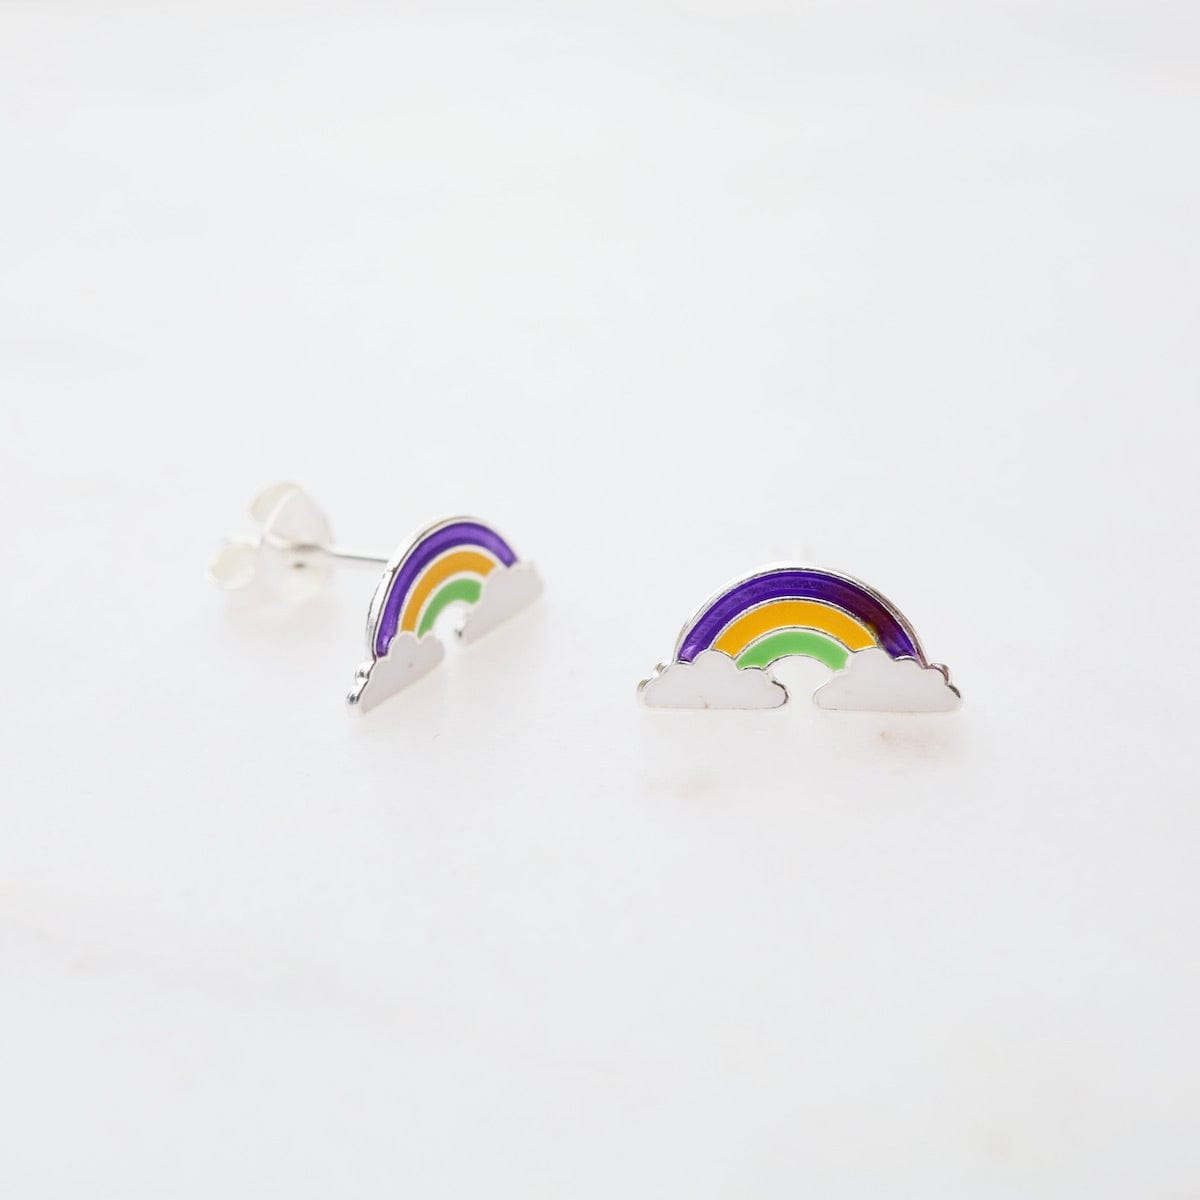 EAR Enamel Rainbow in Clouds Post Earrings - Purple, Yellow, & Green